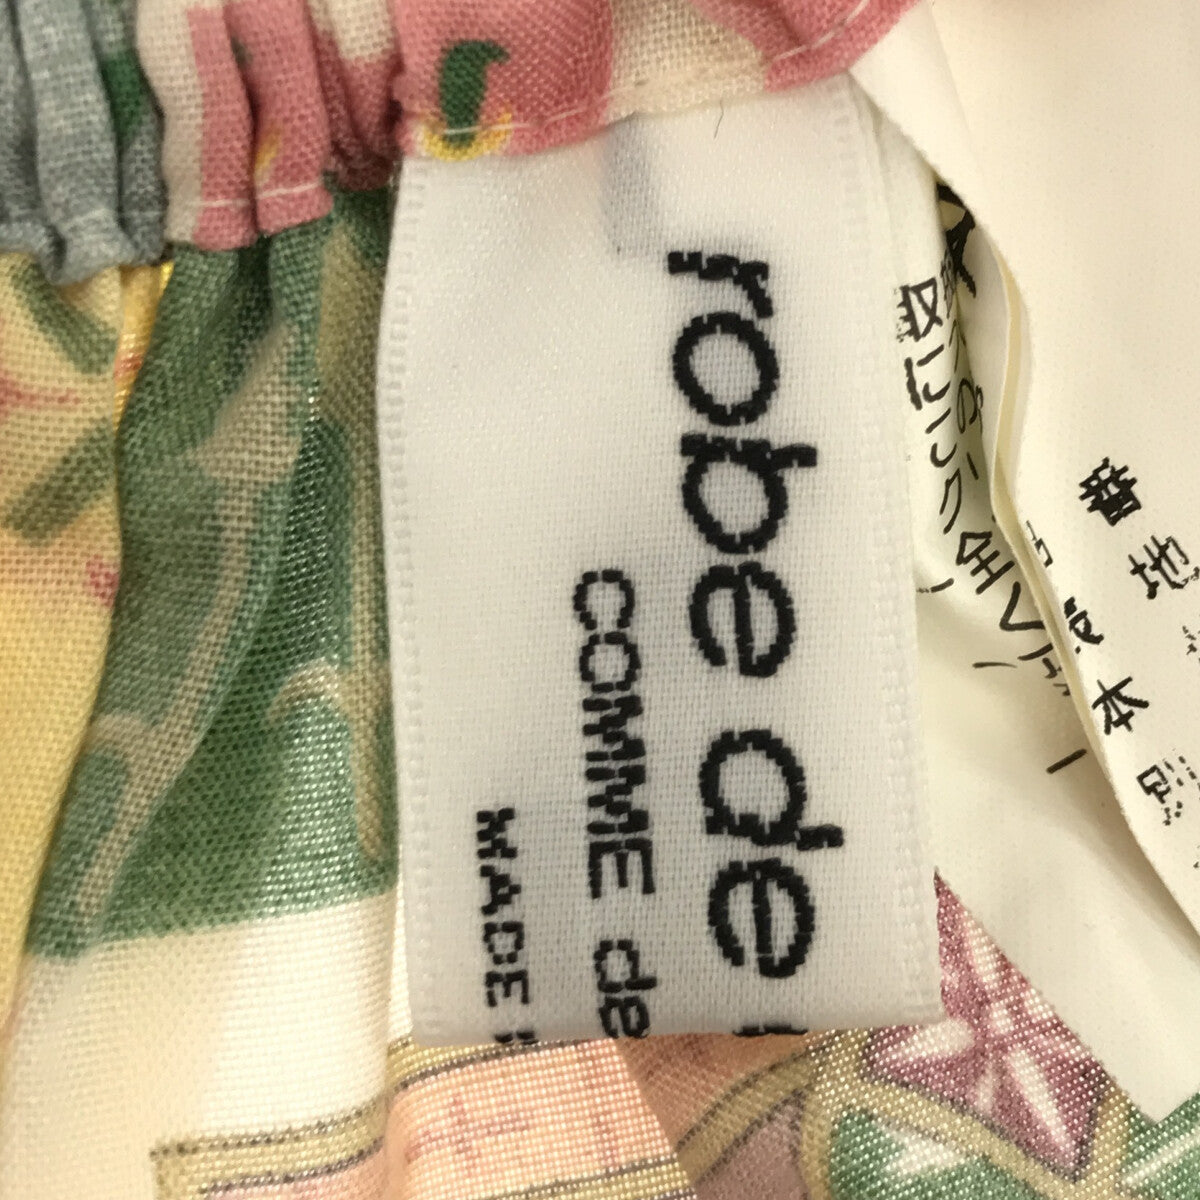 robe de chambre COMME des GARCONS / ローブドシャンブルコムデギャルソン | 90s〜 / AD1999 | 総柄 異素材 切替 ポリエステル シルク スカーフ ロングスカート |